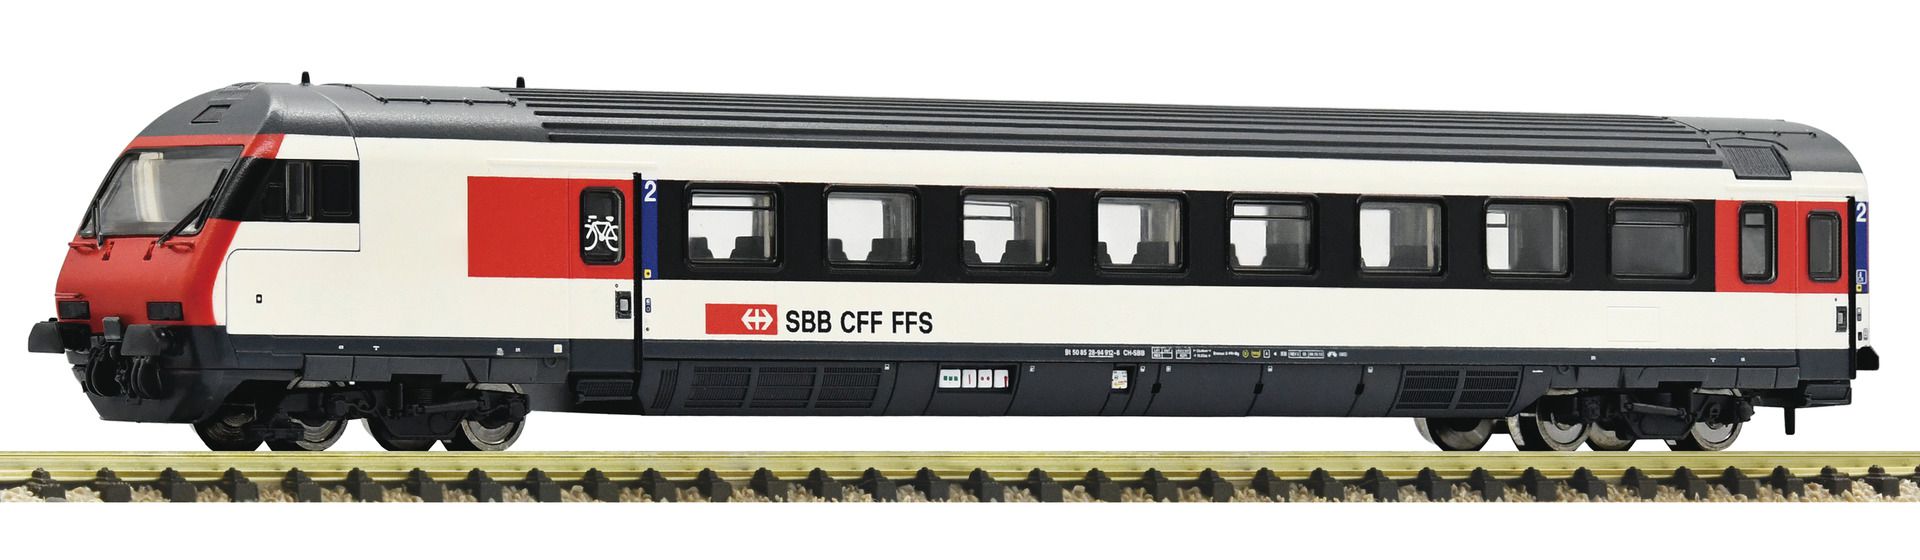 Fleischmann 890324 - Steuerwagen EW-IV 2. Klasse, SBB, Ep.VI